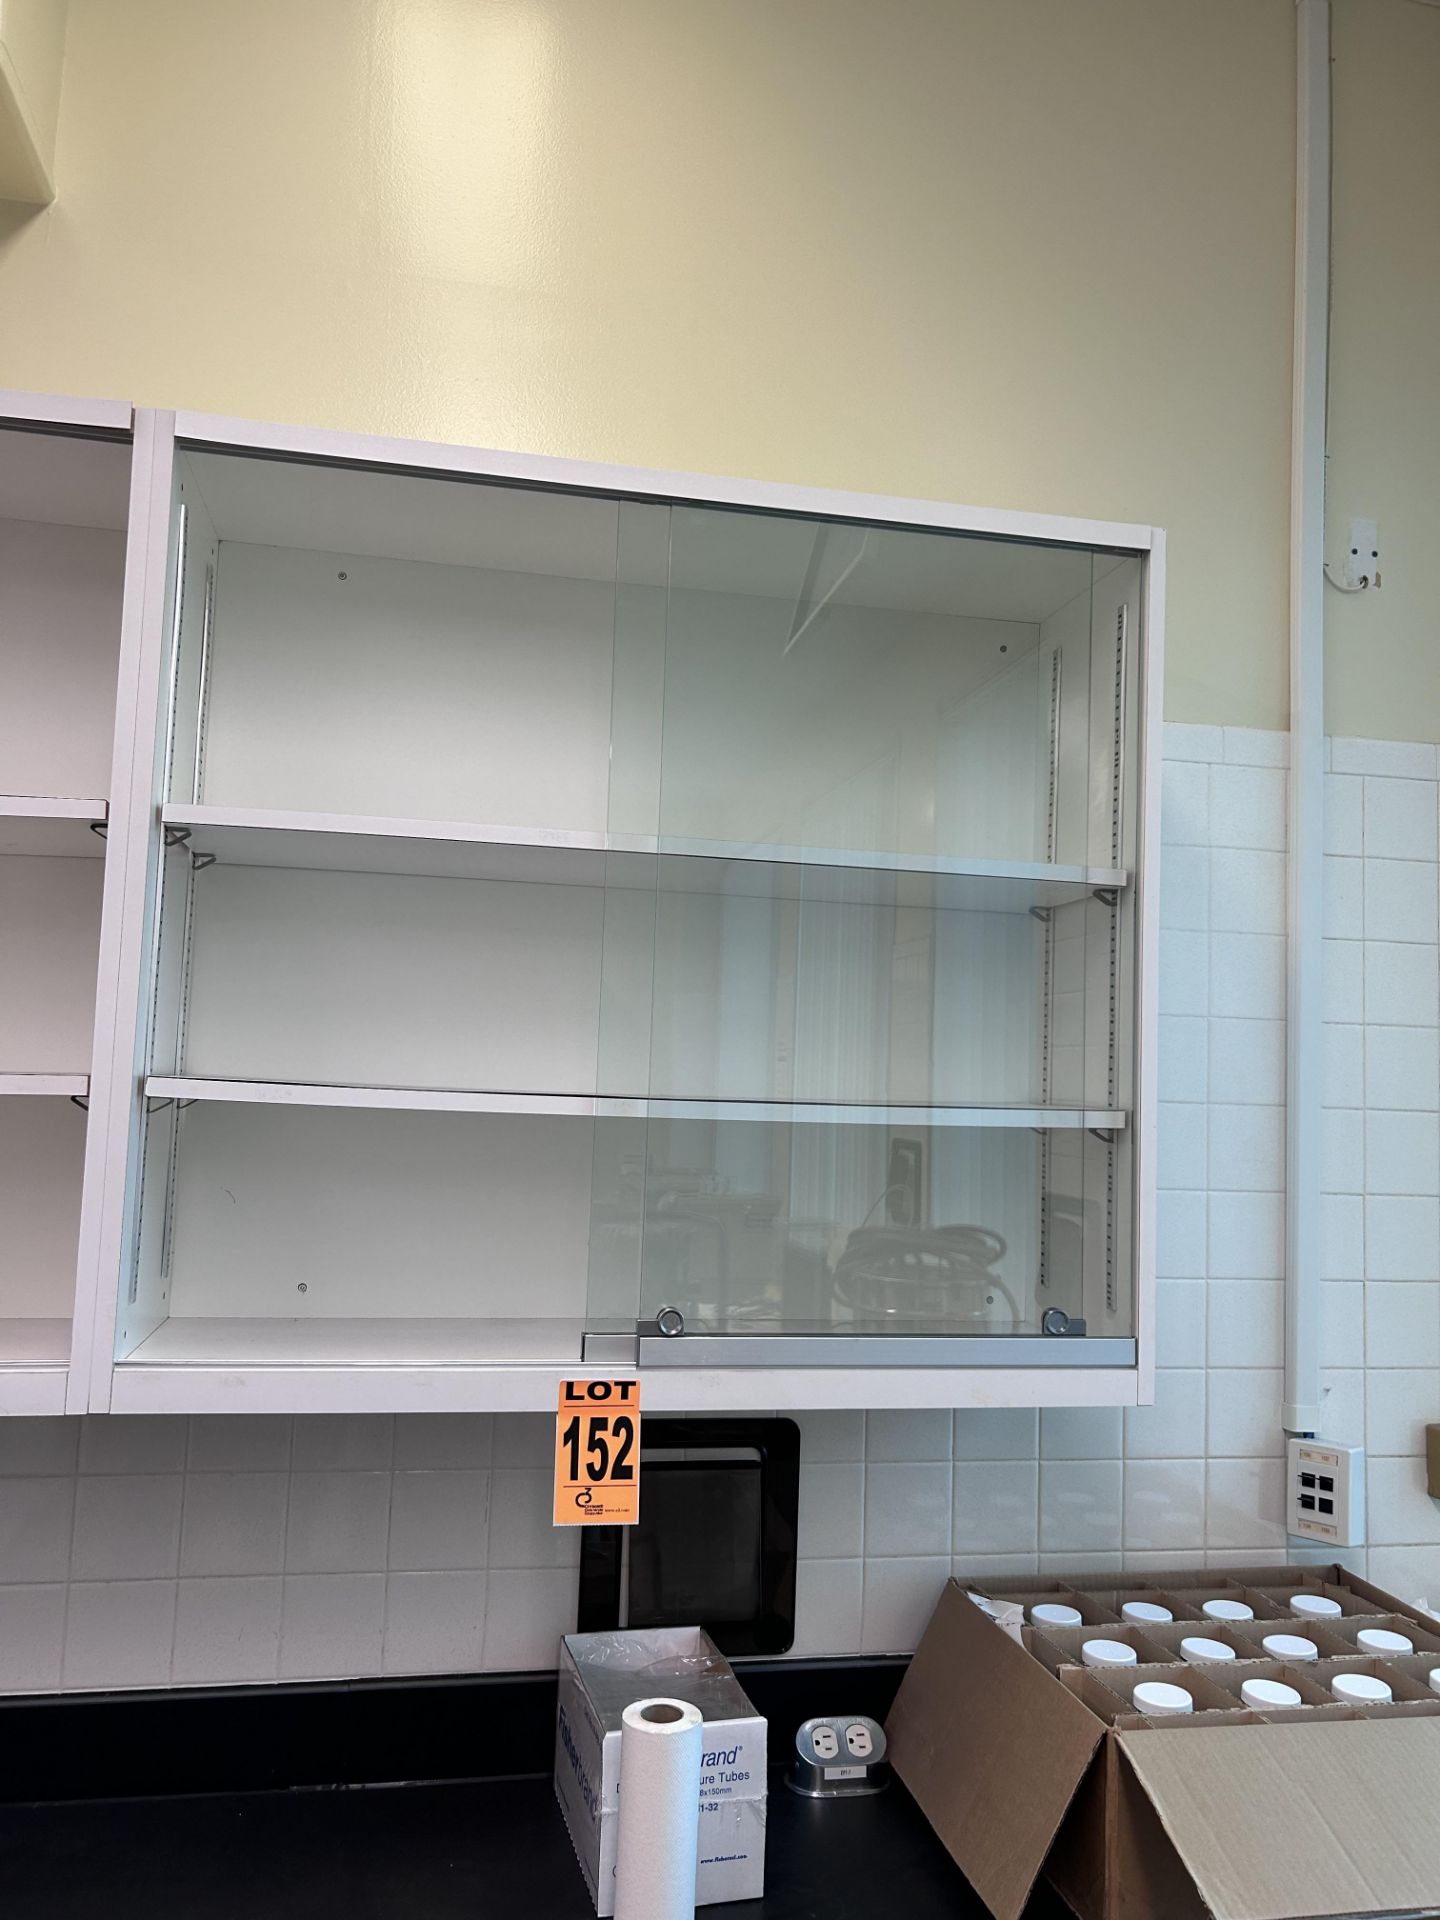 3-shelf cabinet with glass door